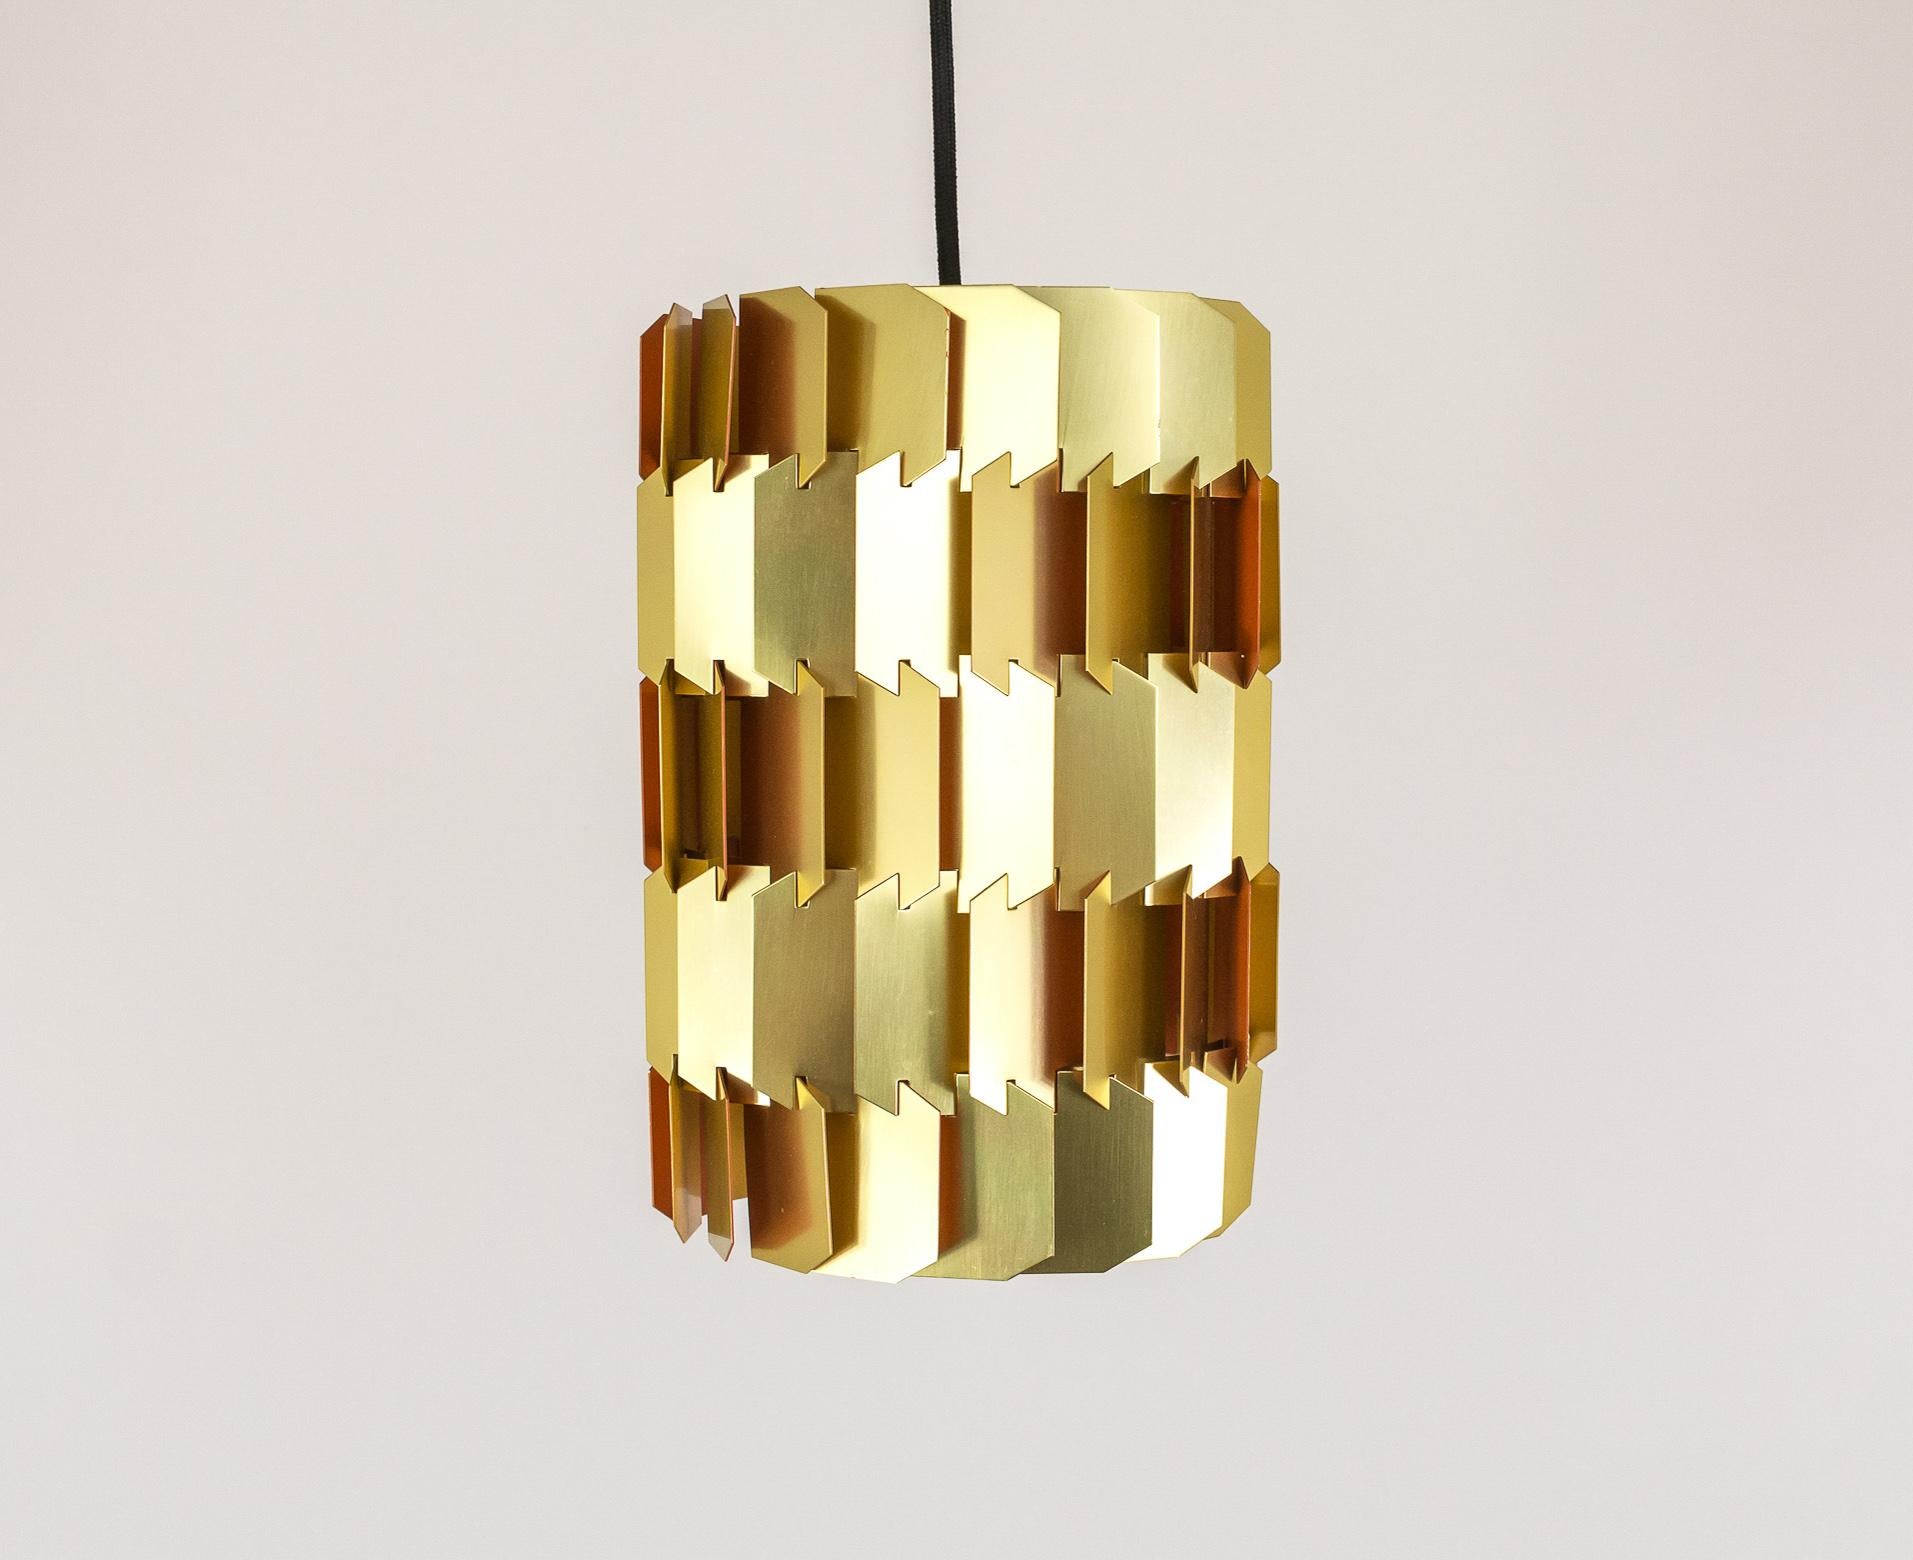 Louis Weisdorf, der bedeutende dänische Architekt und Designer, schuf 1963 diese goldene Facetten-Pendelleuchte. 

Die Facette besteht aus 18 identisch geformten Schirmen. Die Konstruktion der Lampe ist ein 3-D-Puzzle, da jedes Teil in die